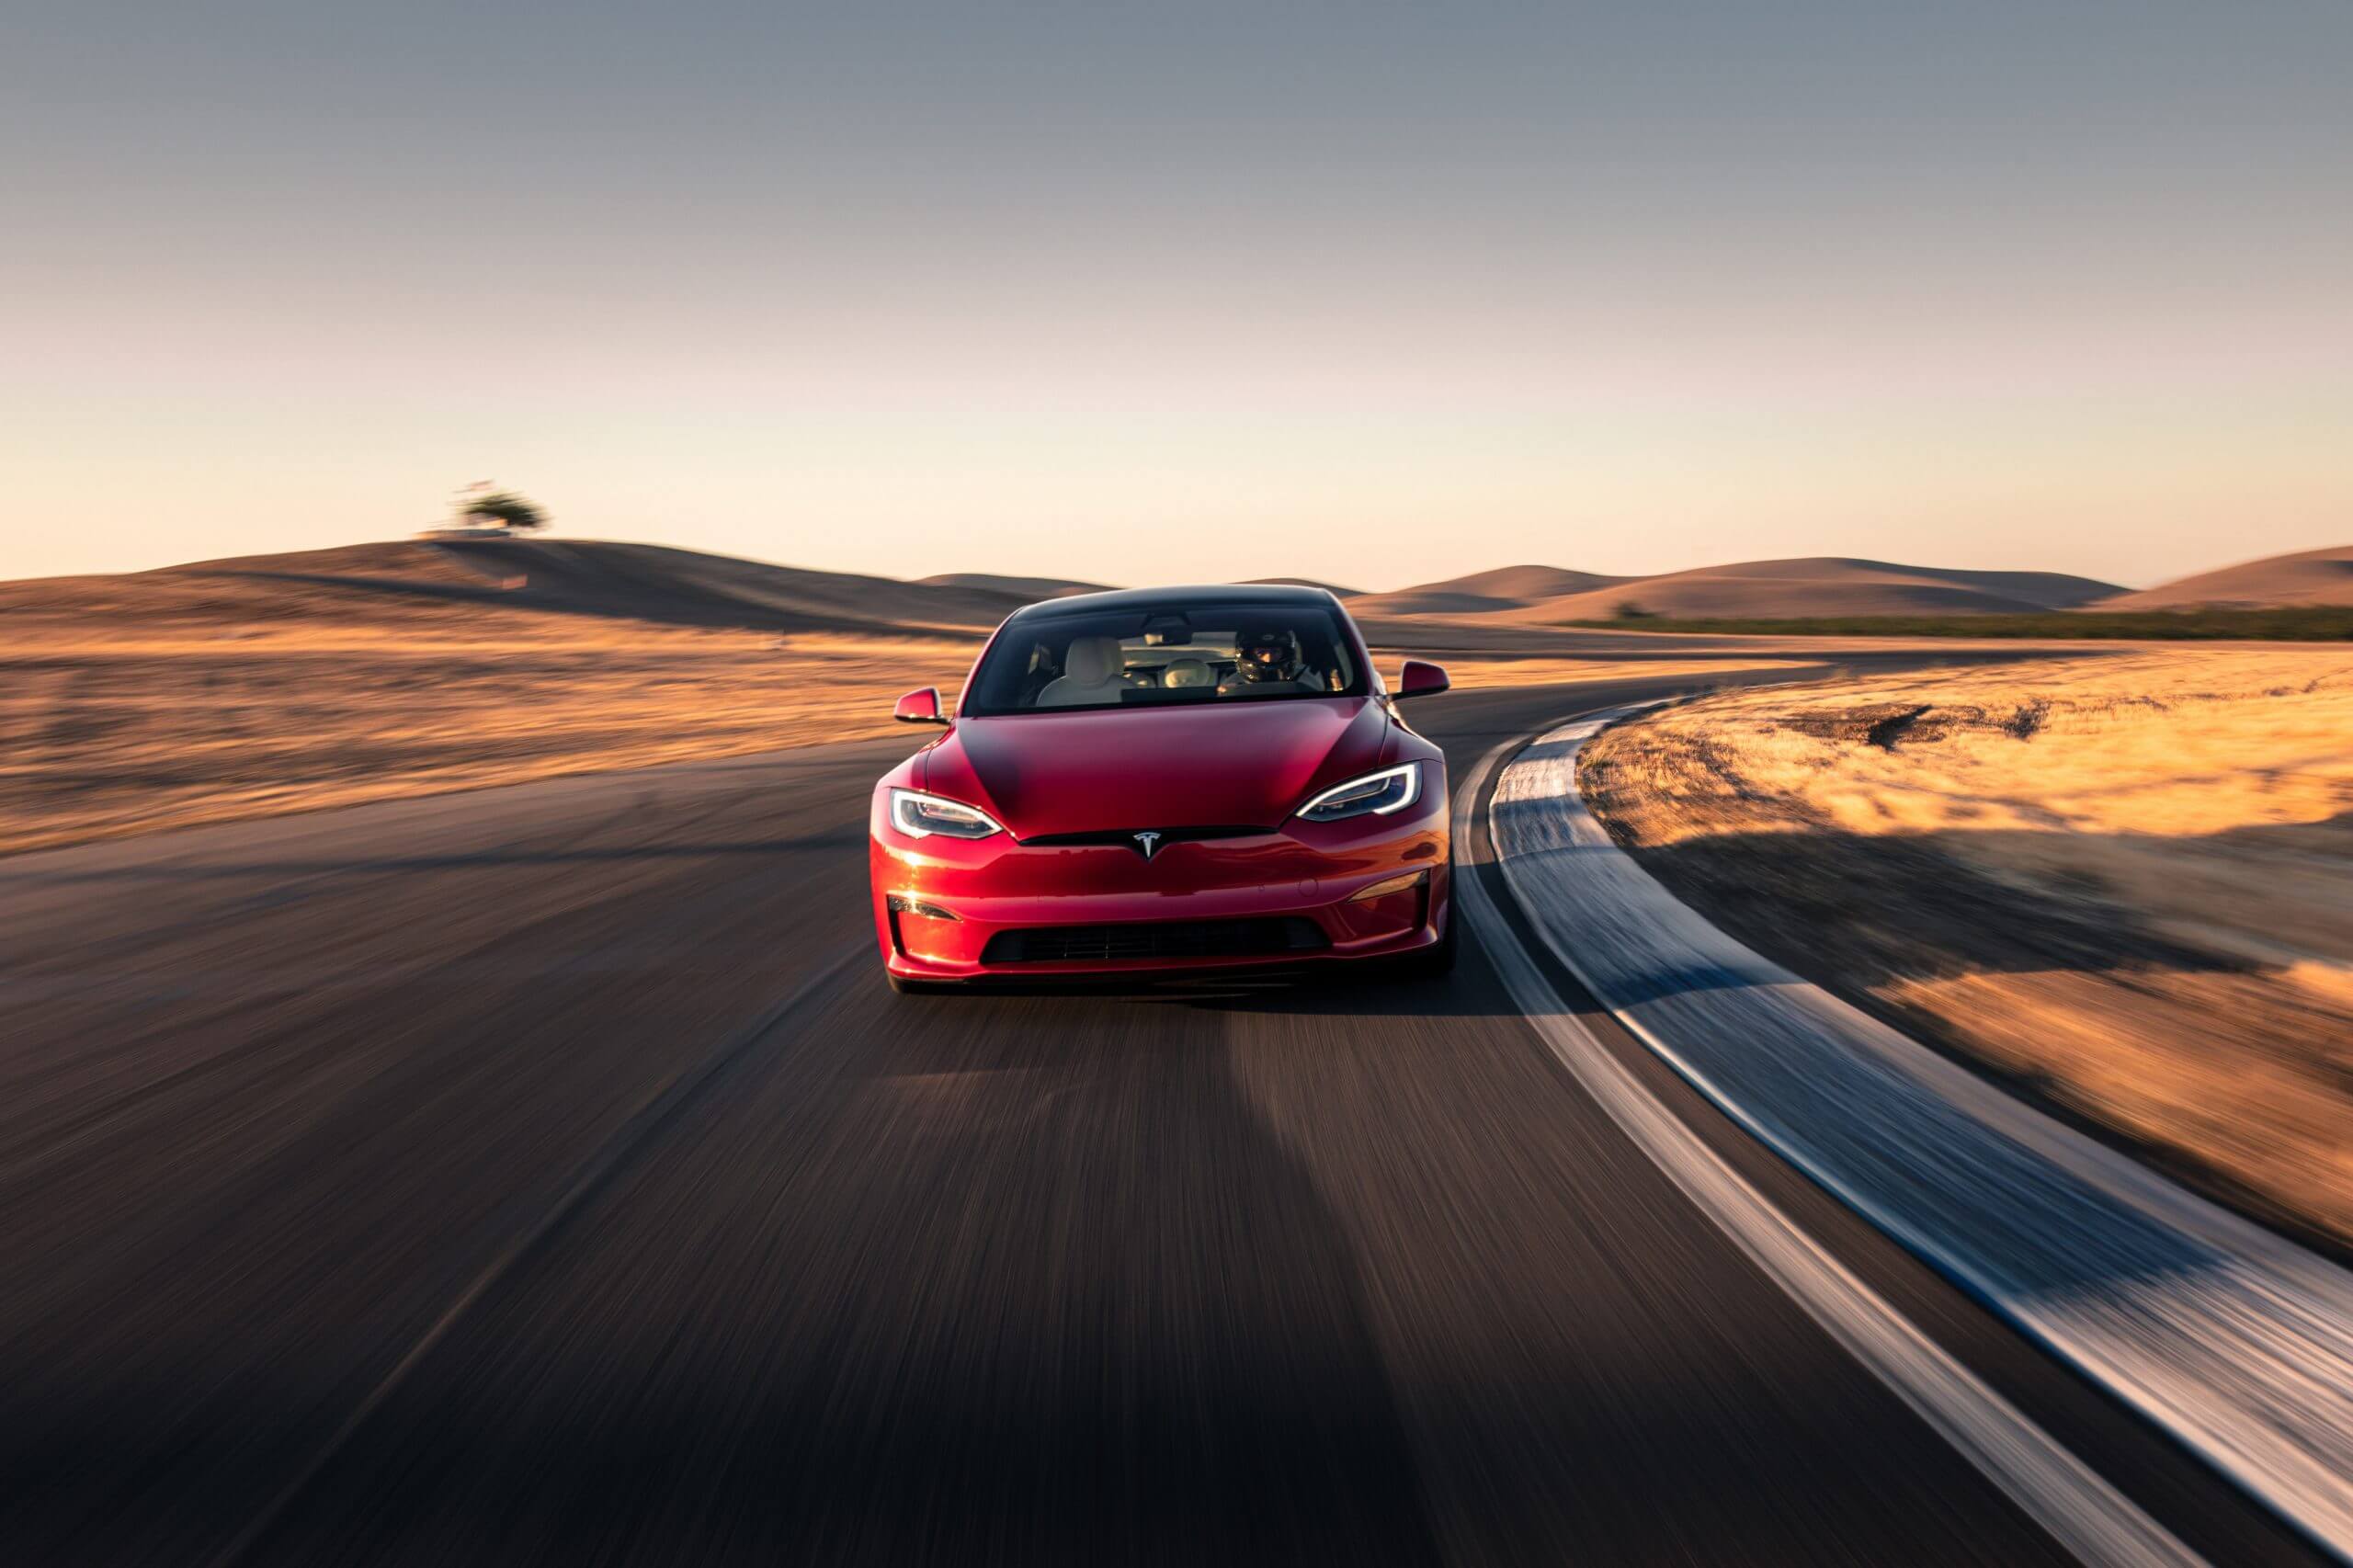 Tesla artık arabanızın konumu takip edildiğinde size haber verecek